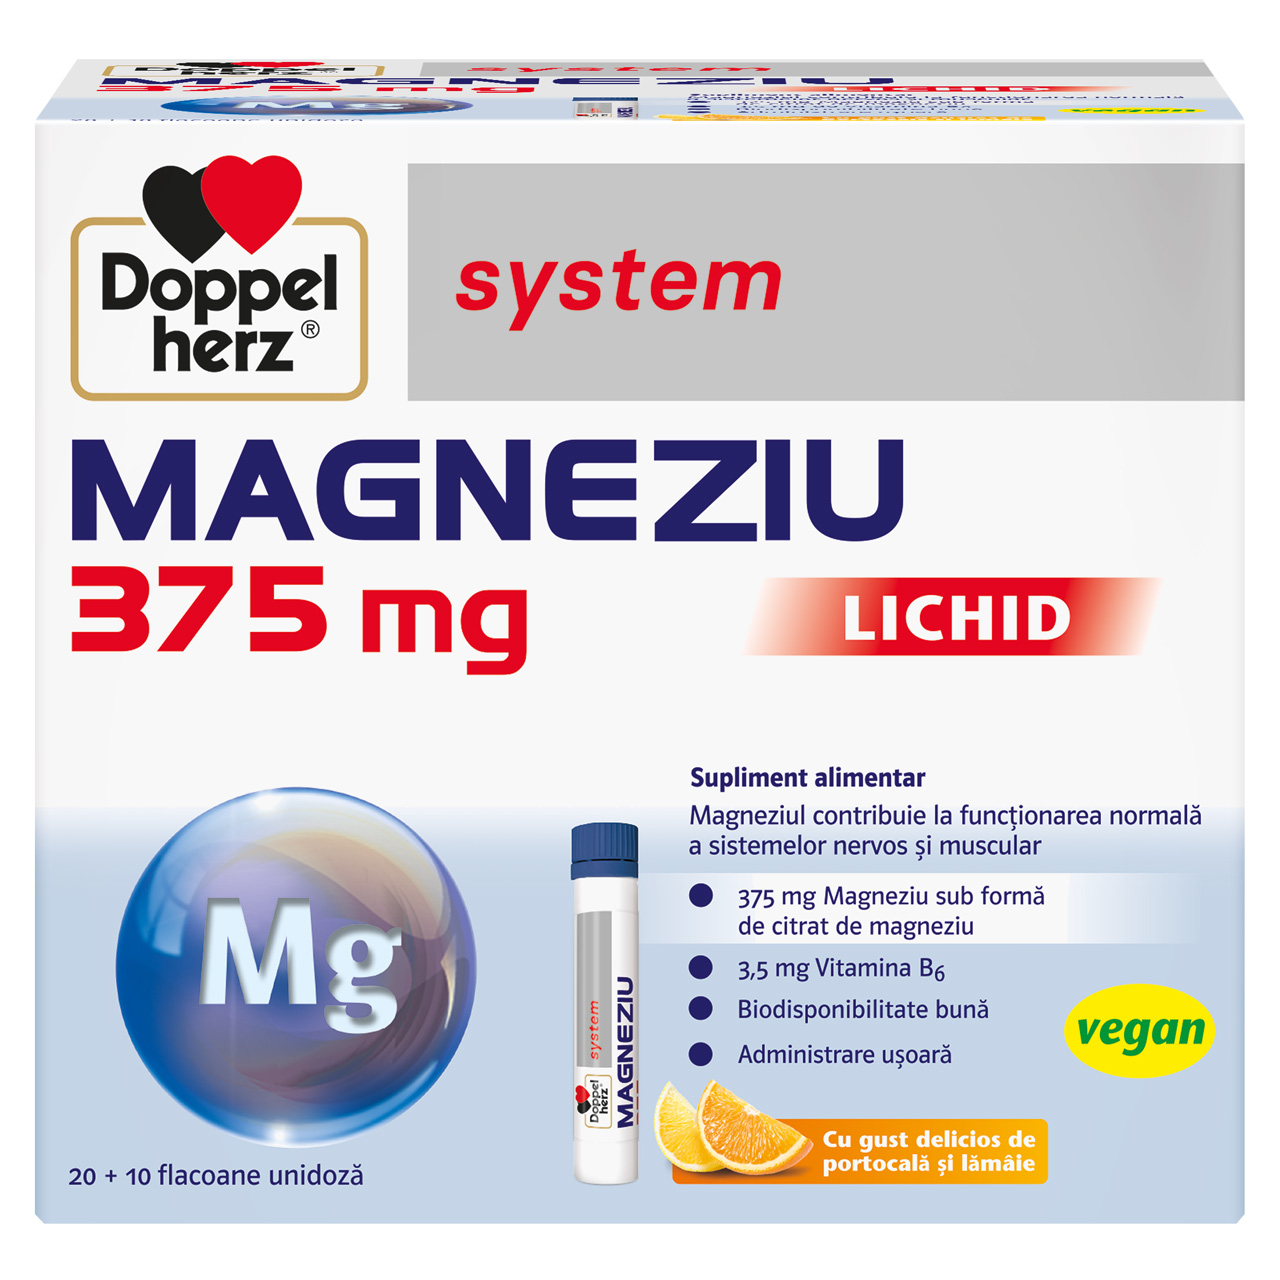 Magneziu lichid System, 375 mg, 30 flacoane, Doppelherz